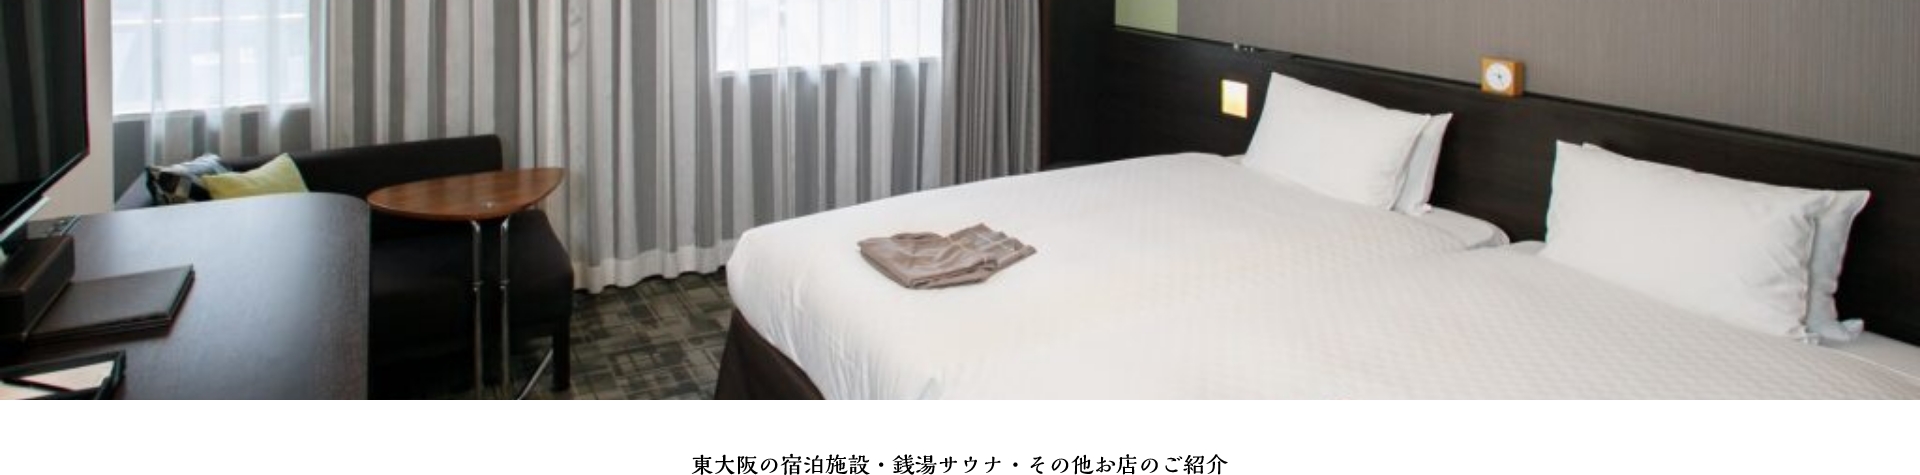 東大阪の楽しめる宿泊施設・銭湯サウナをご紹介